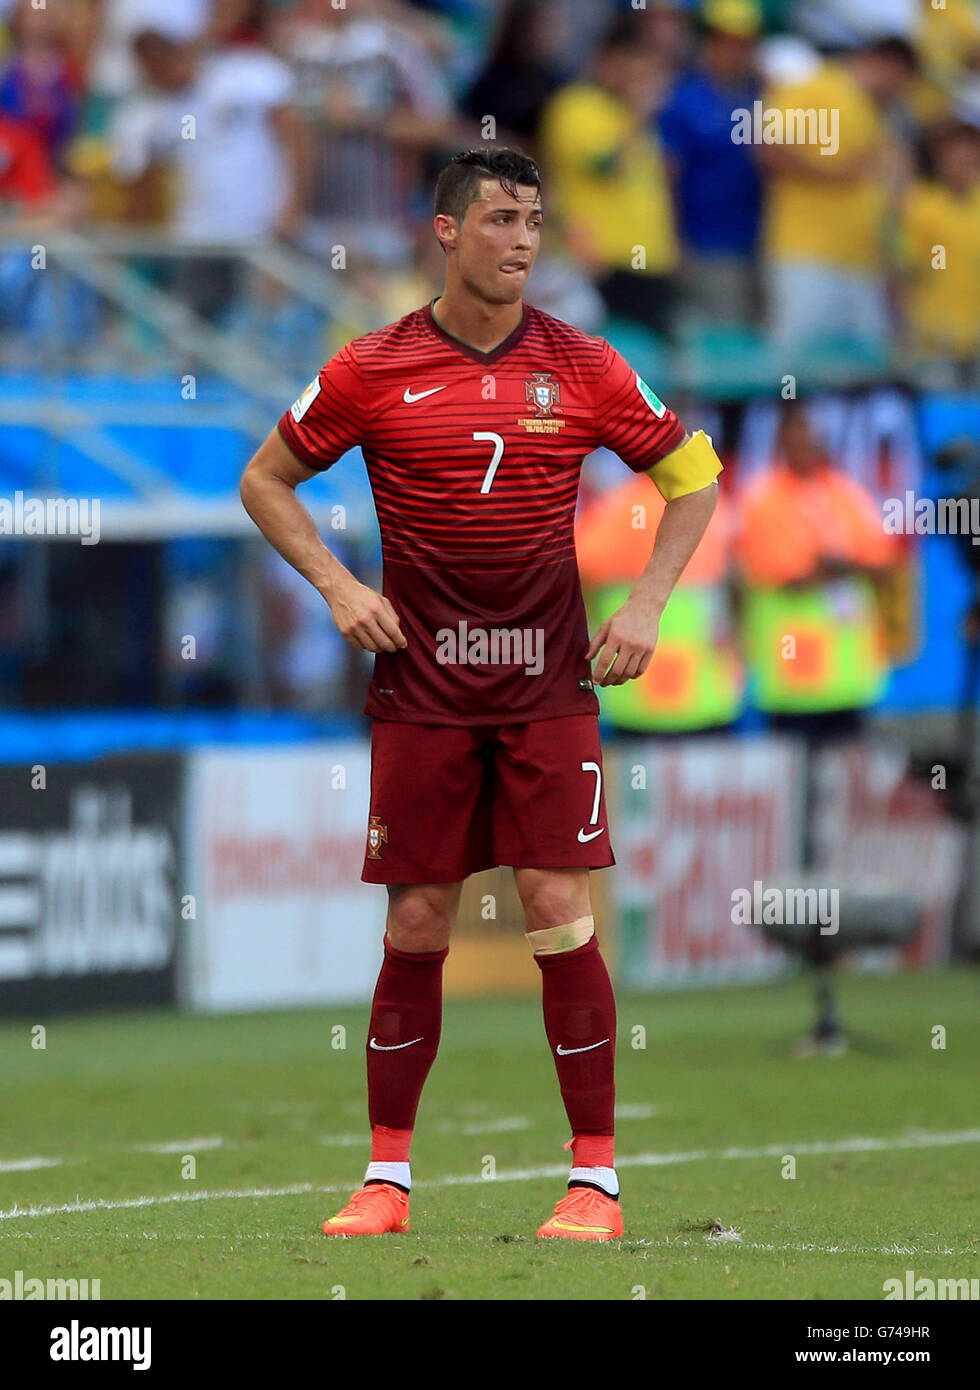 Calcio - Coppa del mondo FIFA 2014 - Gruppo G - Germania v Portogallo - Arena Fonte Nova. Cristiano Ronaldo, portoghese Foto Stock